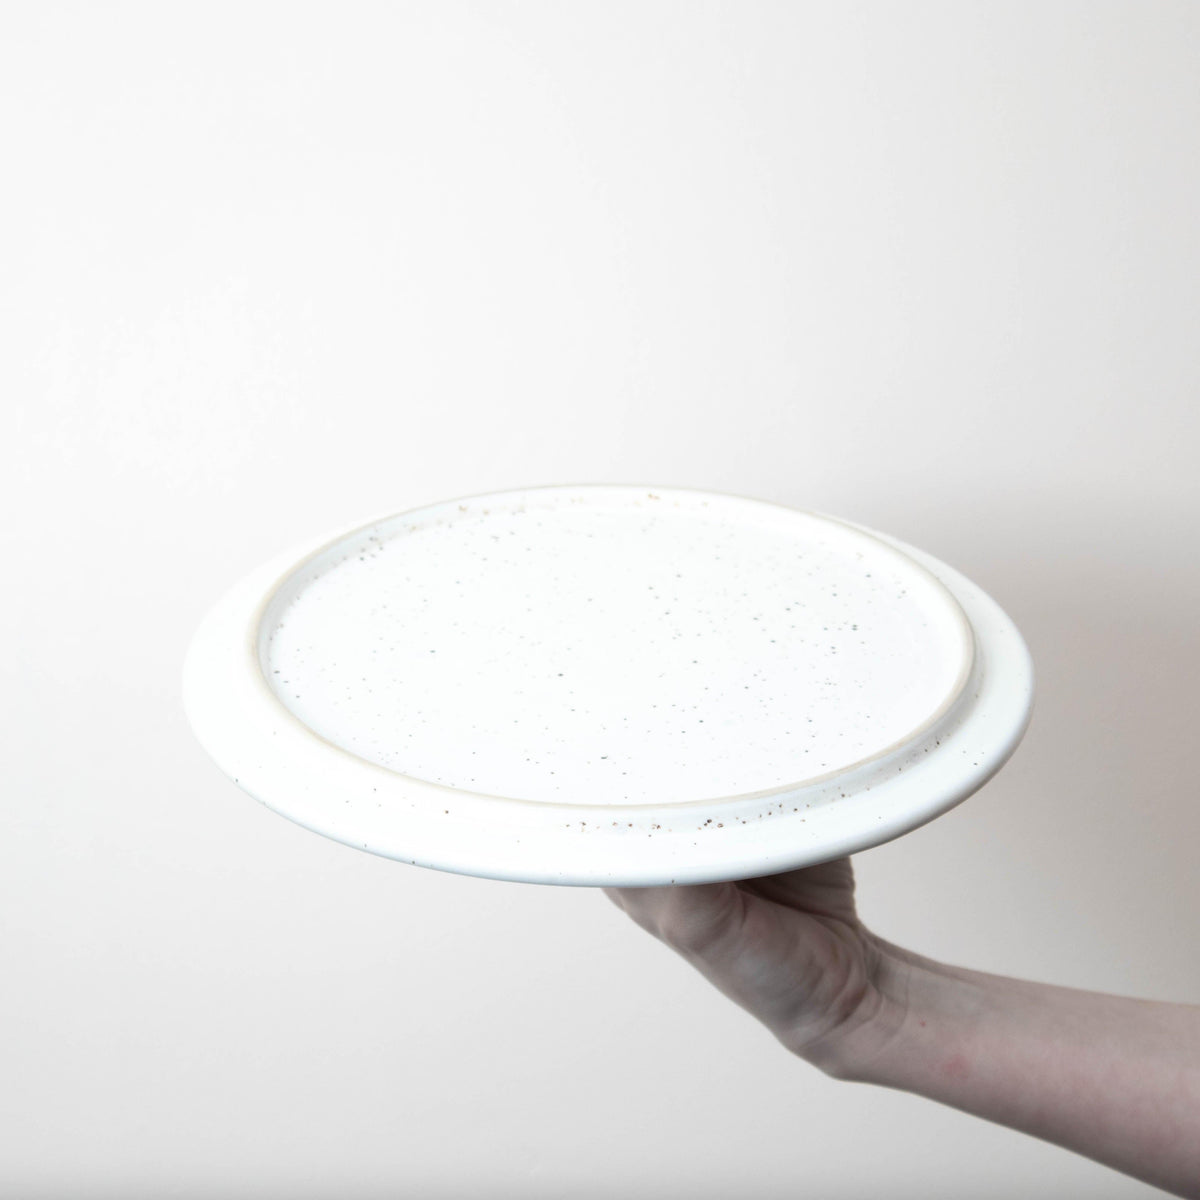 Vanilla Speckled Stoneware Cloche Round Plate 27cm Dia 